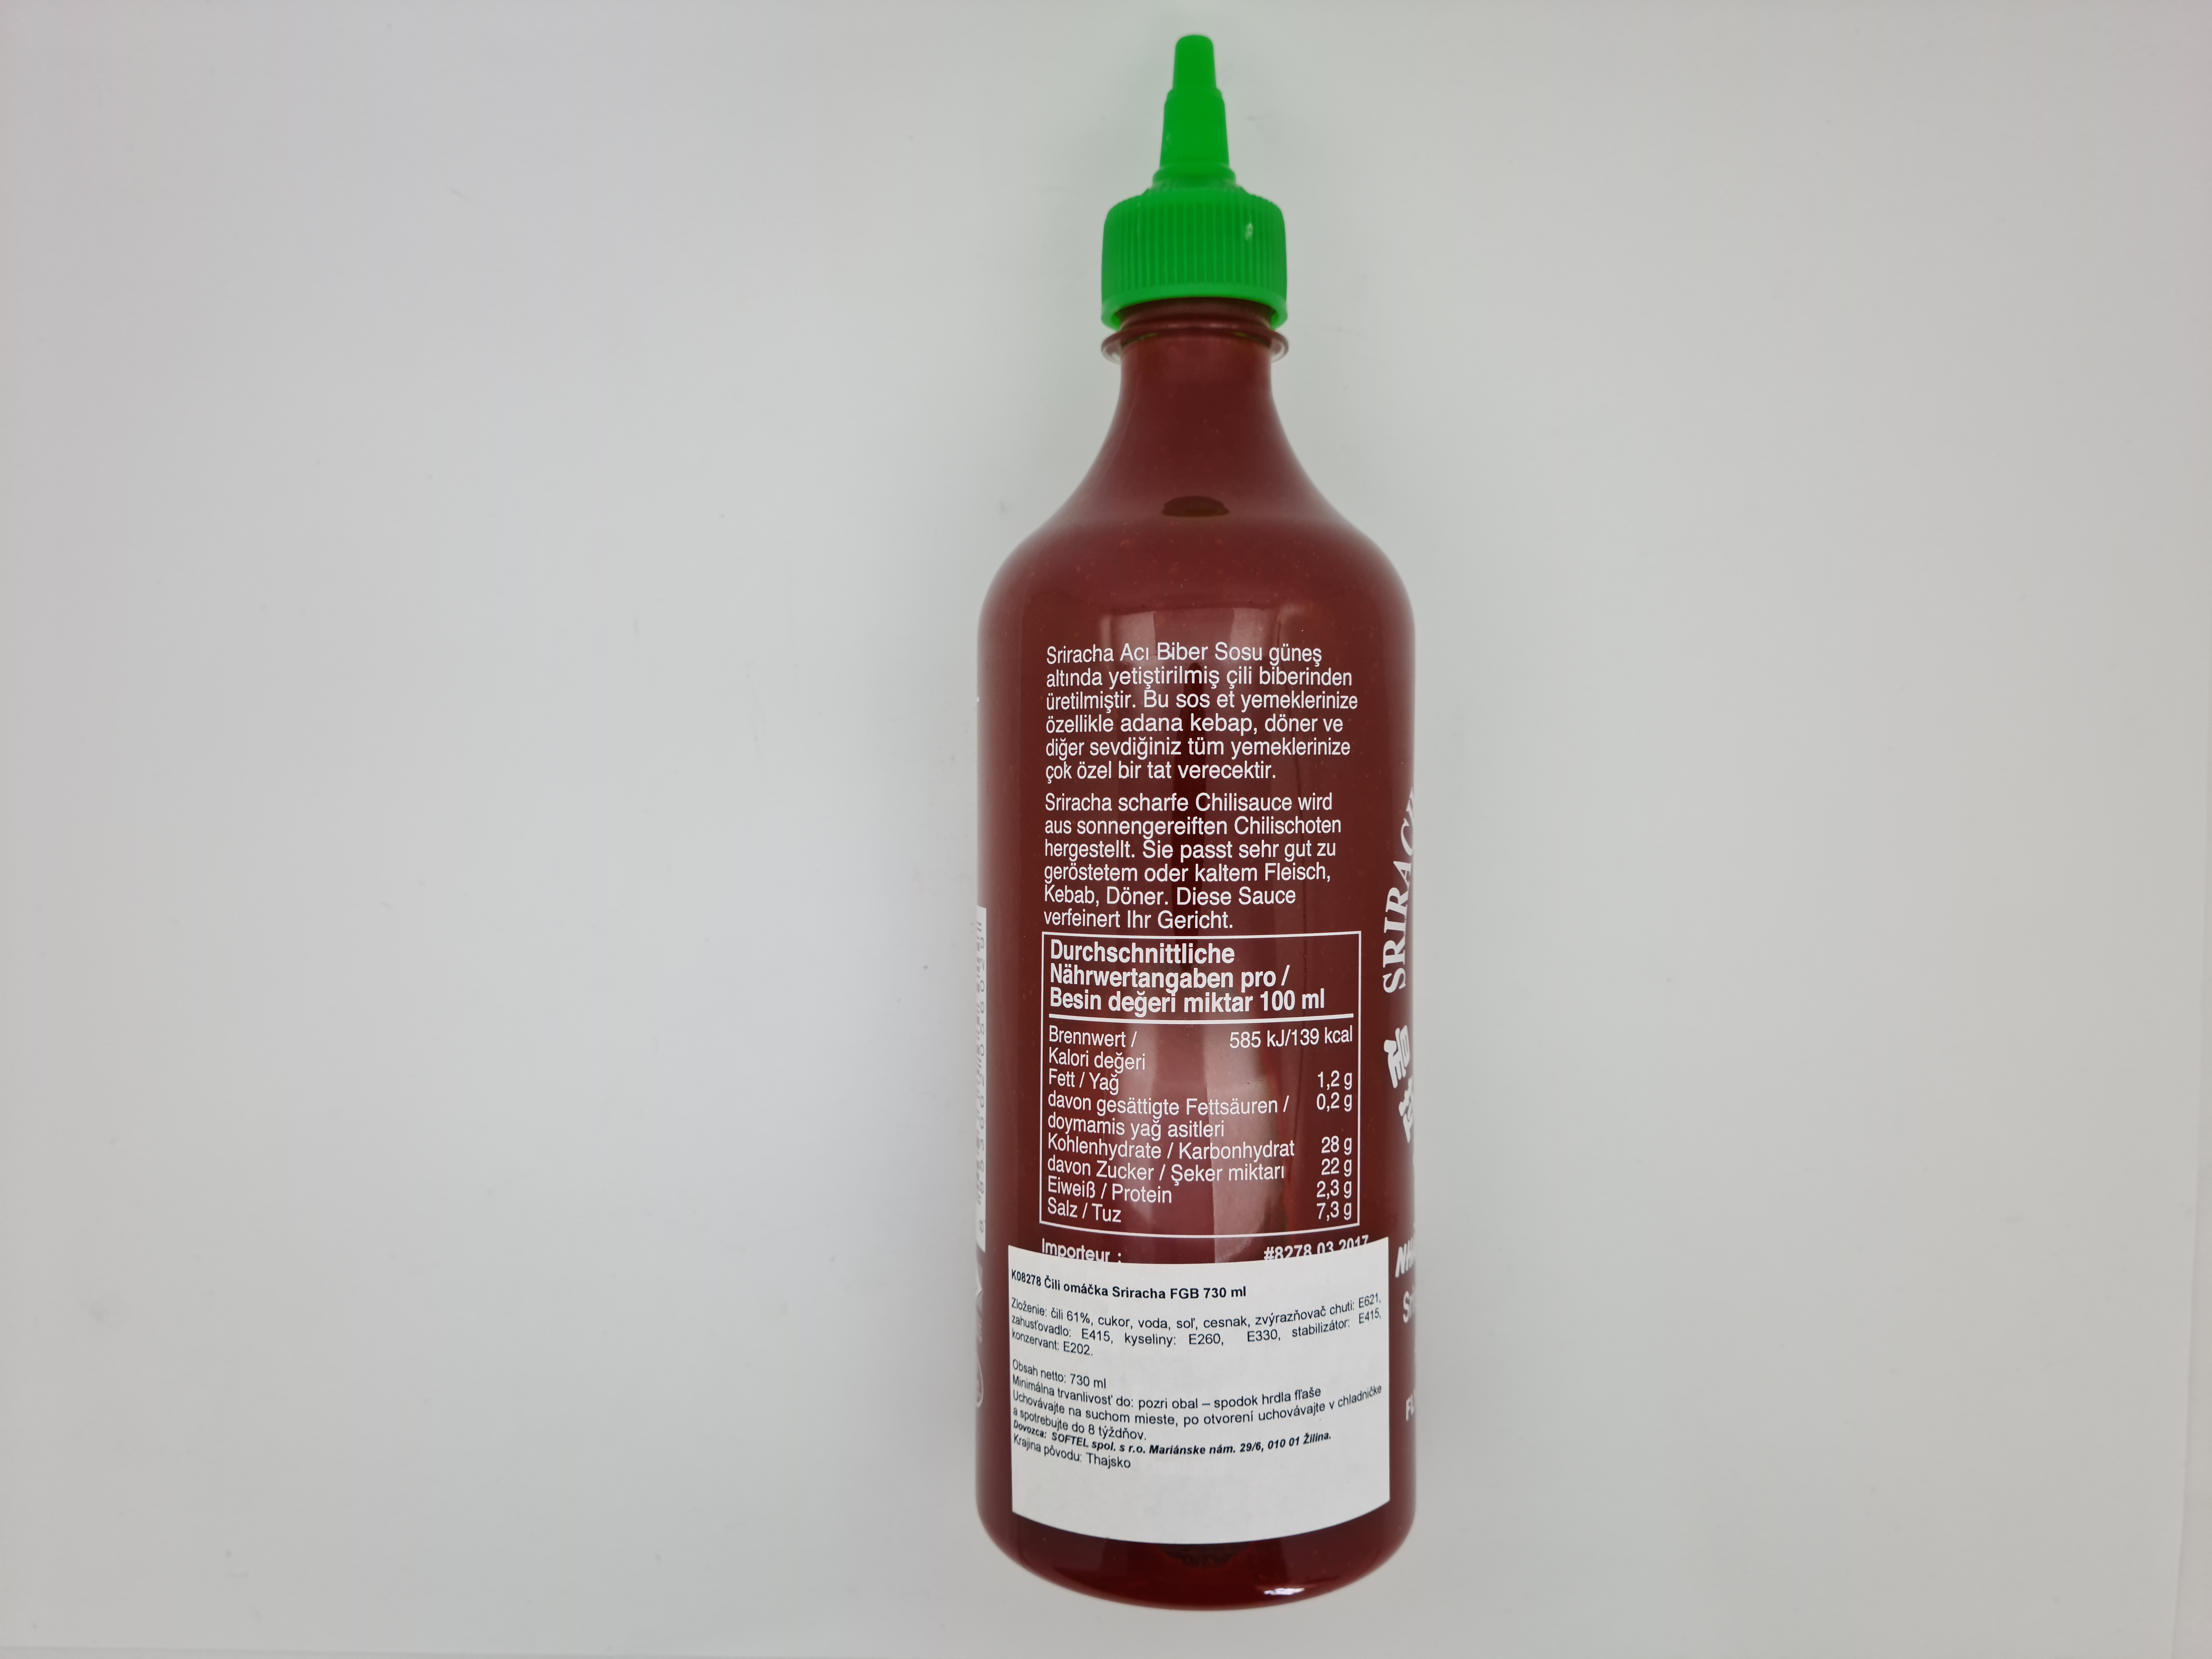 Originál omáčka Sriracha Flying Goose Brand 730 ml